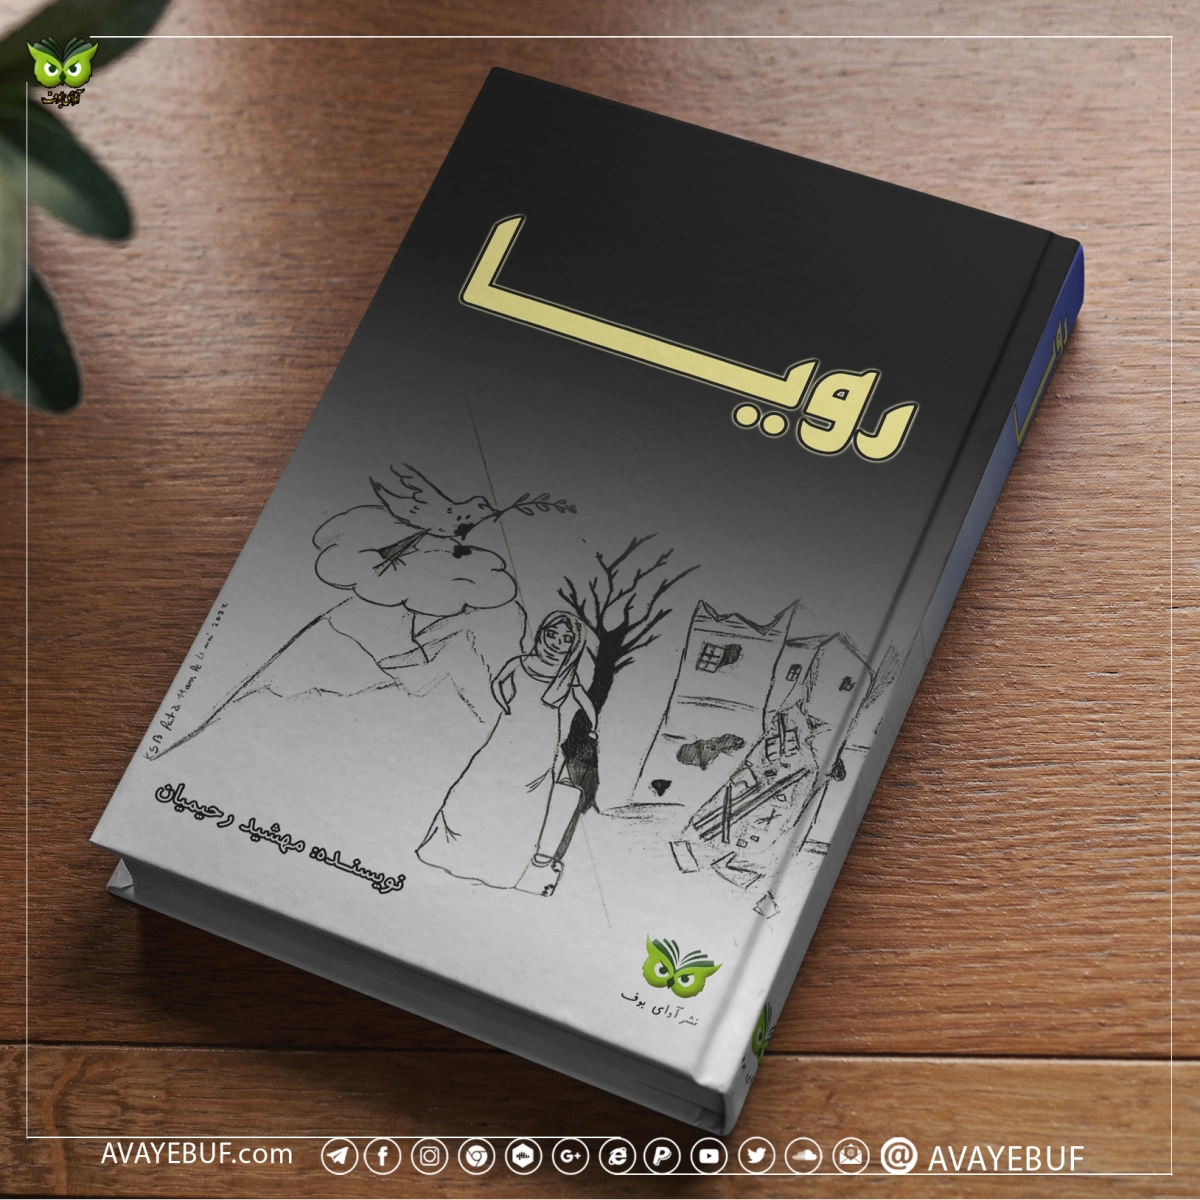 رویا | نویسنده: مهشید رحیمیان  | انتشارات: نشر آوای بوف